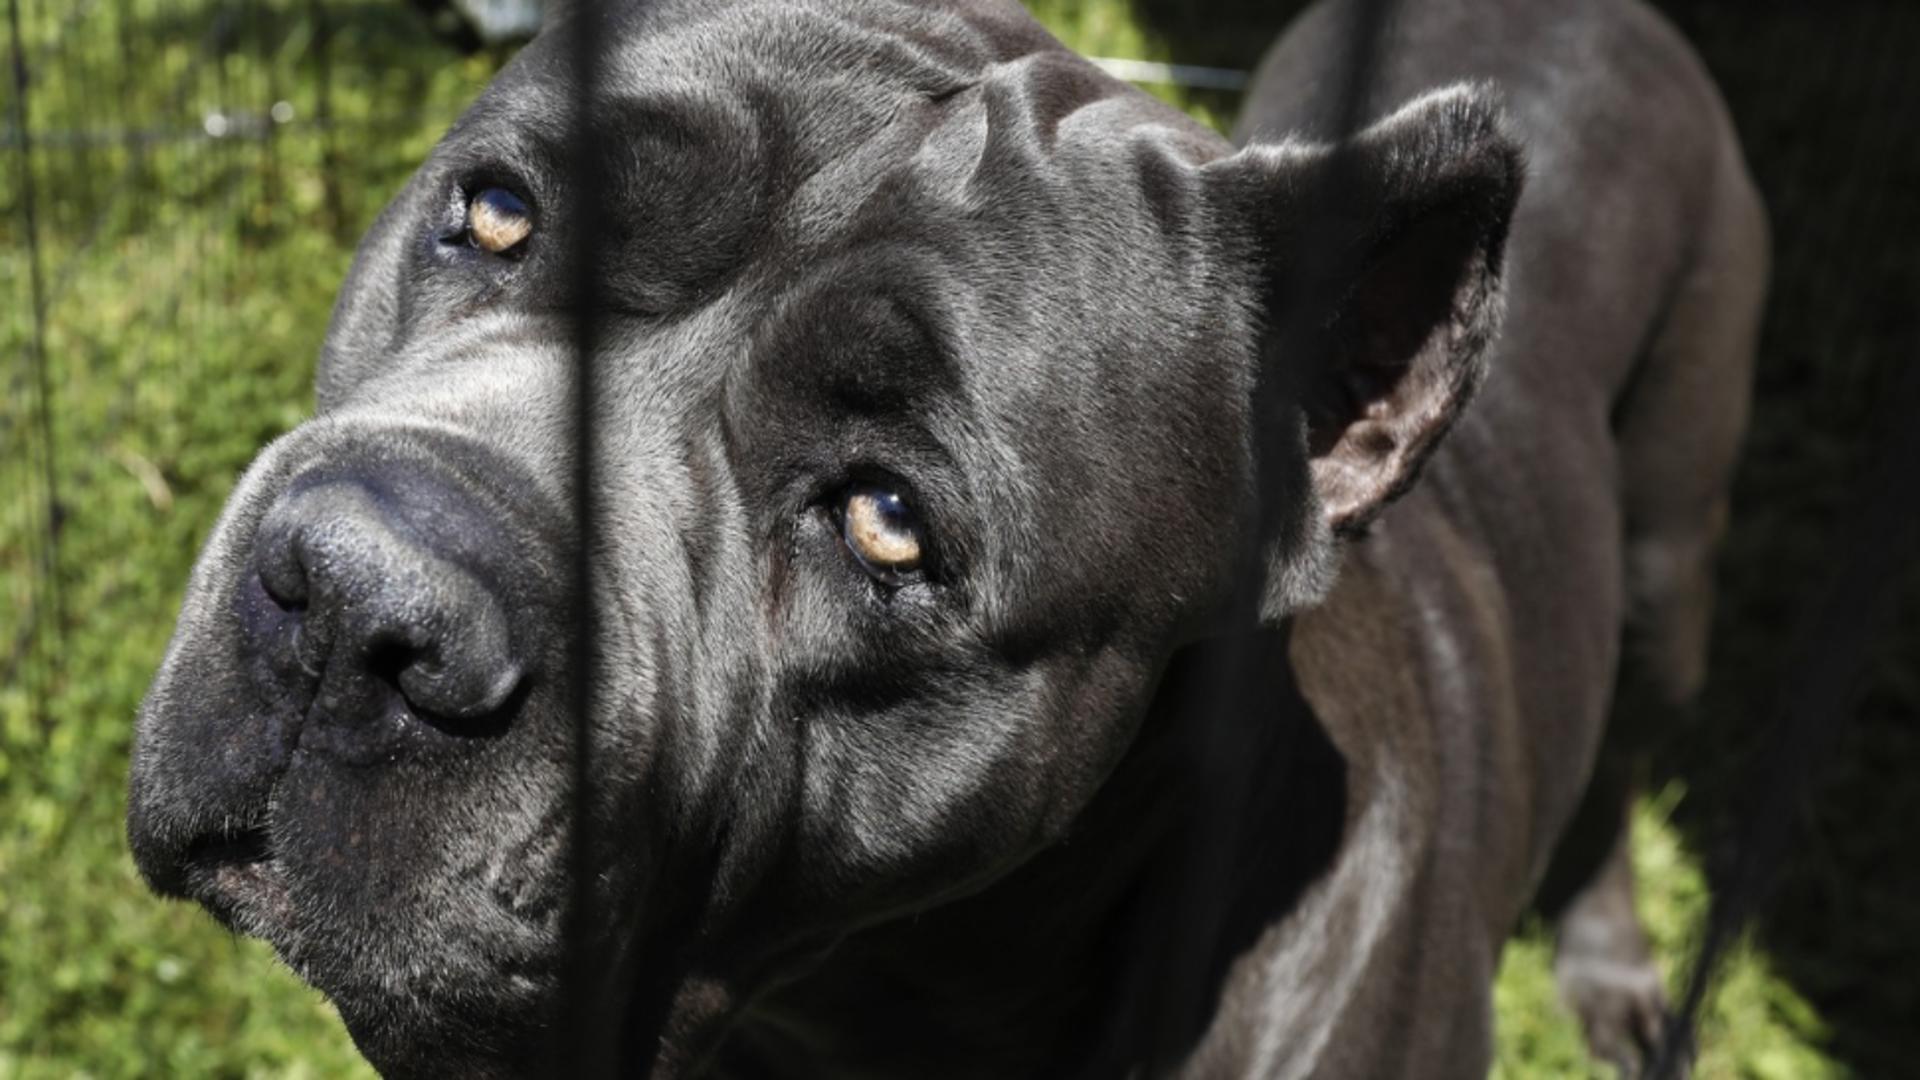 Cane corso este una dintre cele mai periculoase rase de câini /Arhivă foto Profimedia